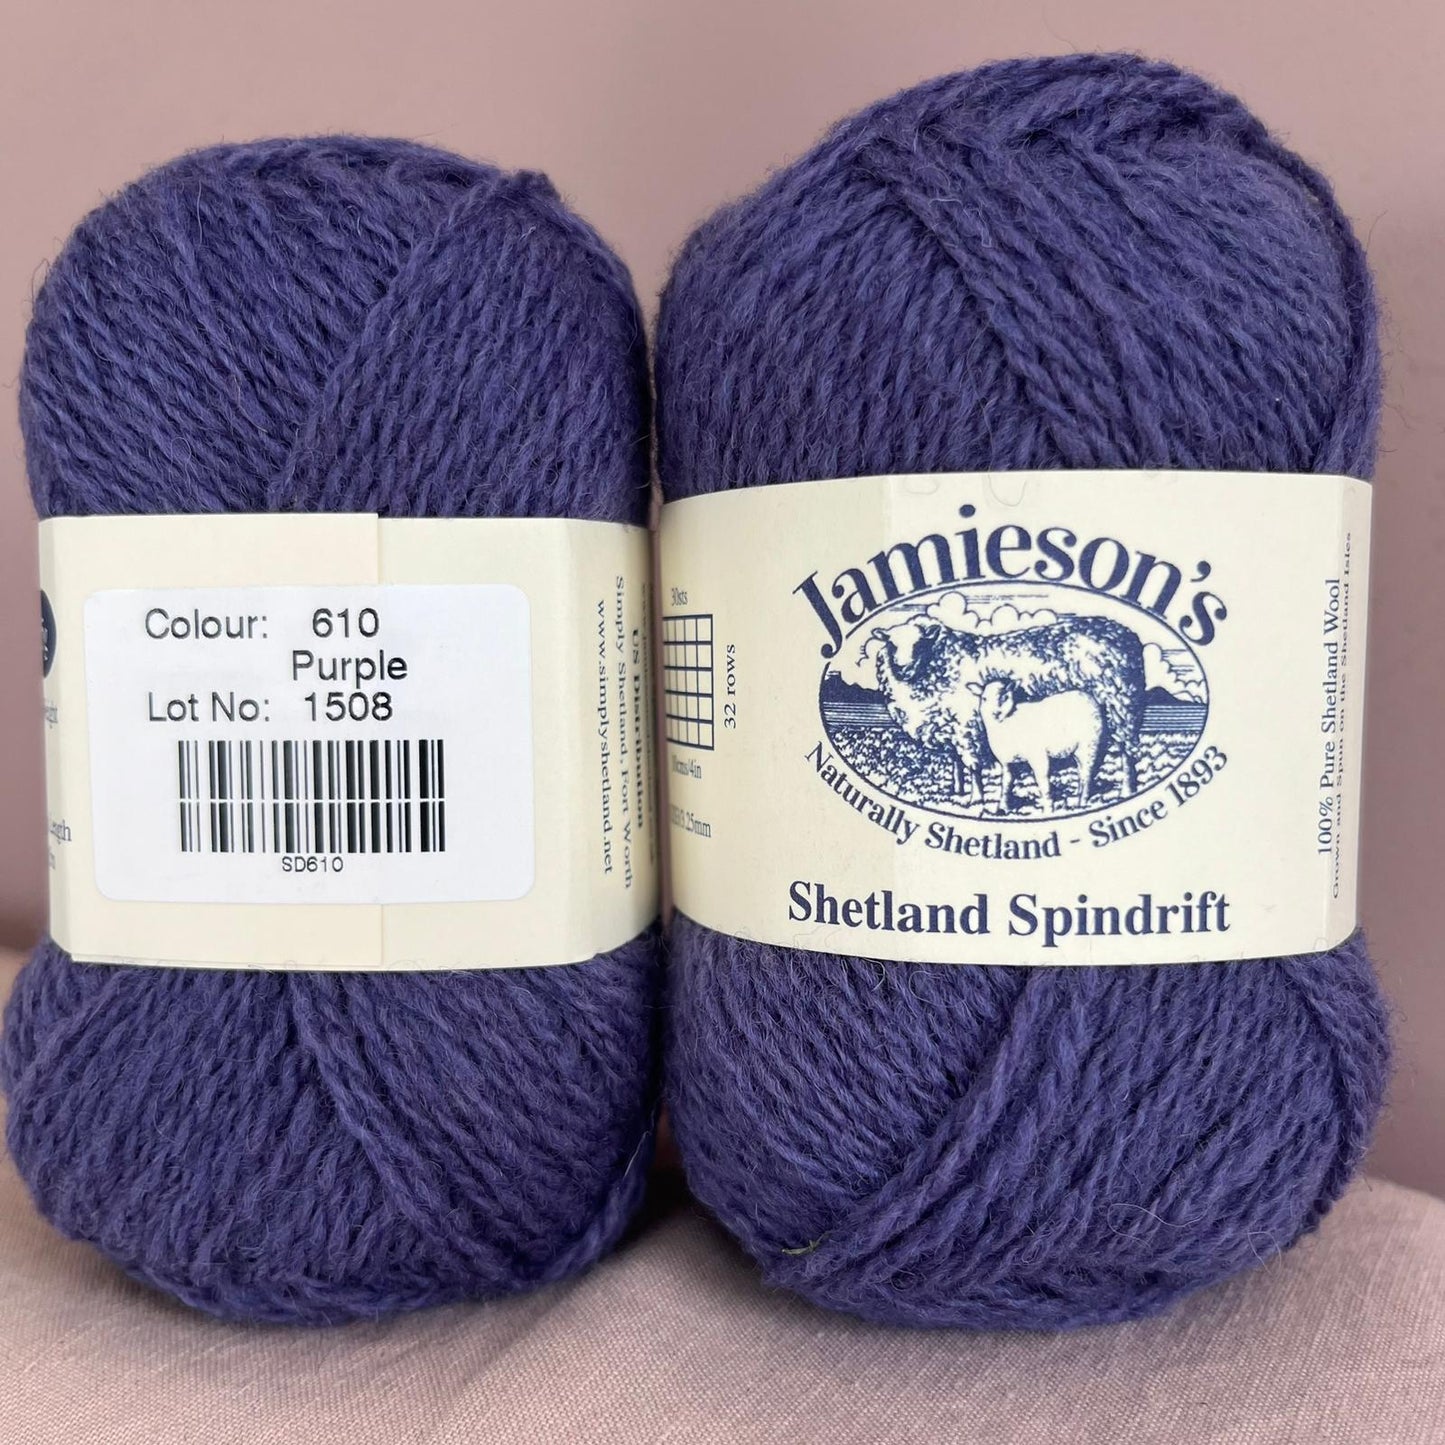 Jamieson's of Shetland Spindrift 101-450